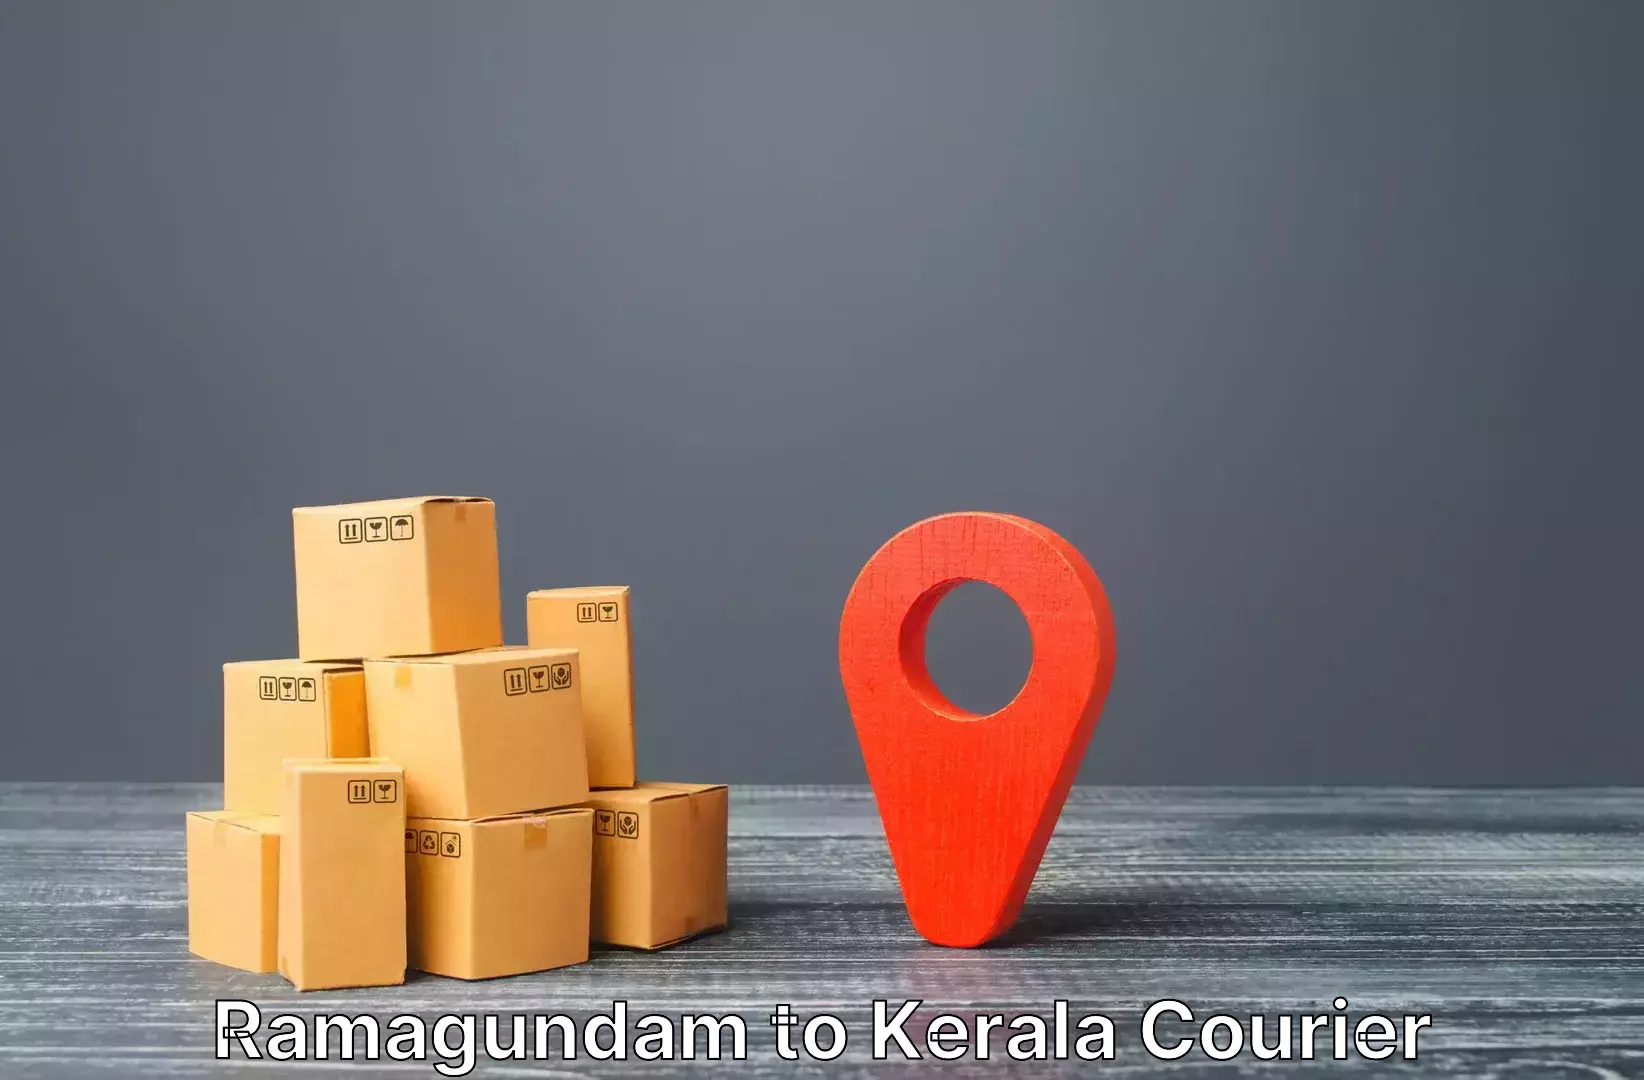 Luggage shipping service Ramagundam to Kerala